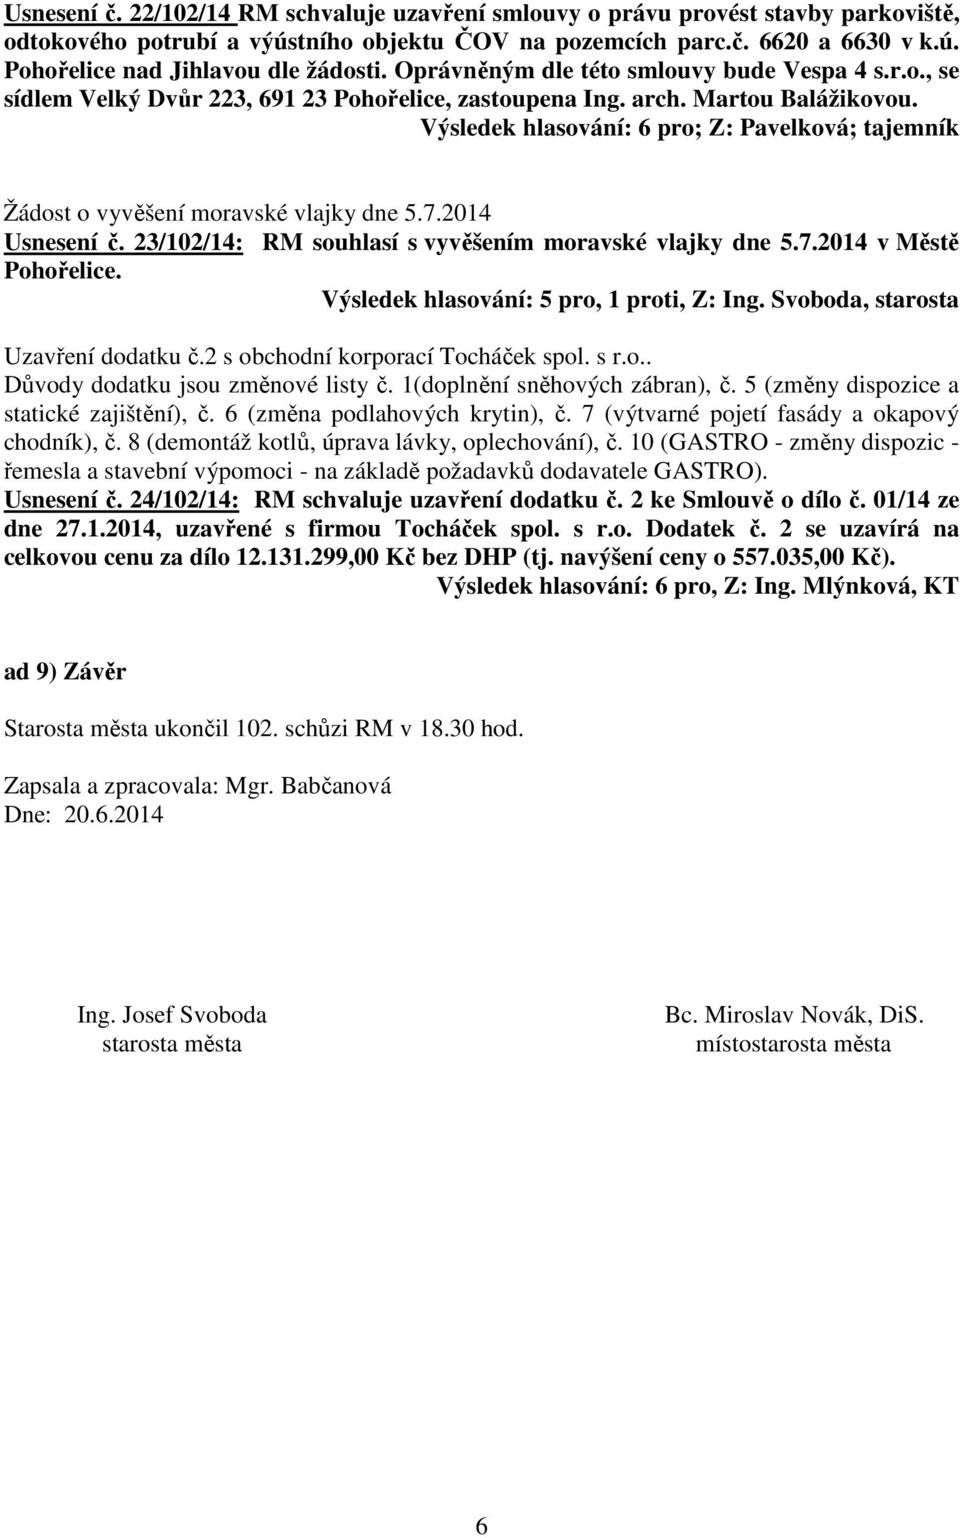 Výsledek hlasování: 6 pro; Z: Pavelková; tajemník Žádost o vyvěšení moravské vlajky dne 5.7.2014 Usnesení č. 23/102/14: RM souhlasí s vyvěšením moravské vlajky dne 5.7.2014 v Městě Pohořelice.